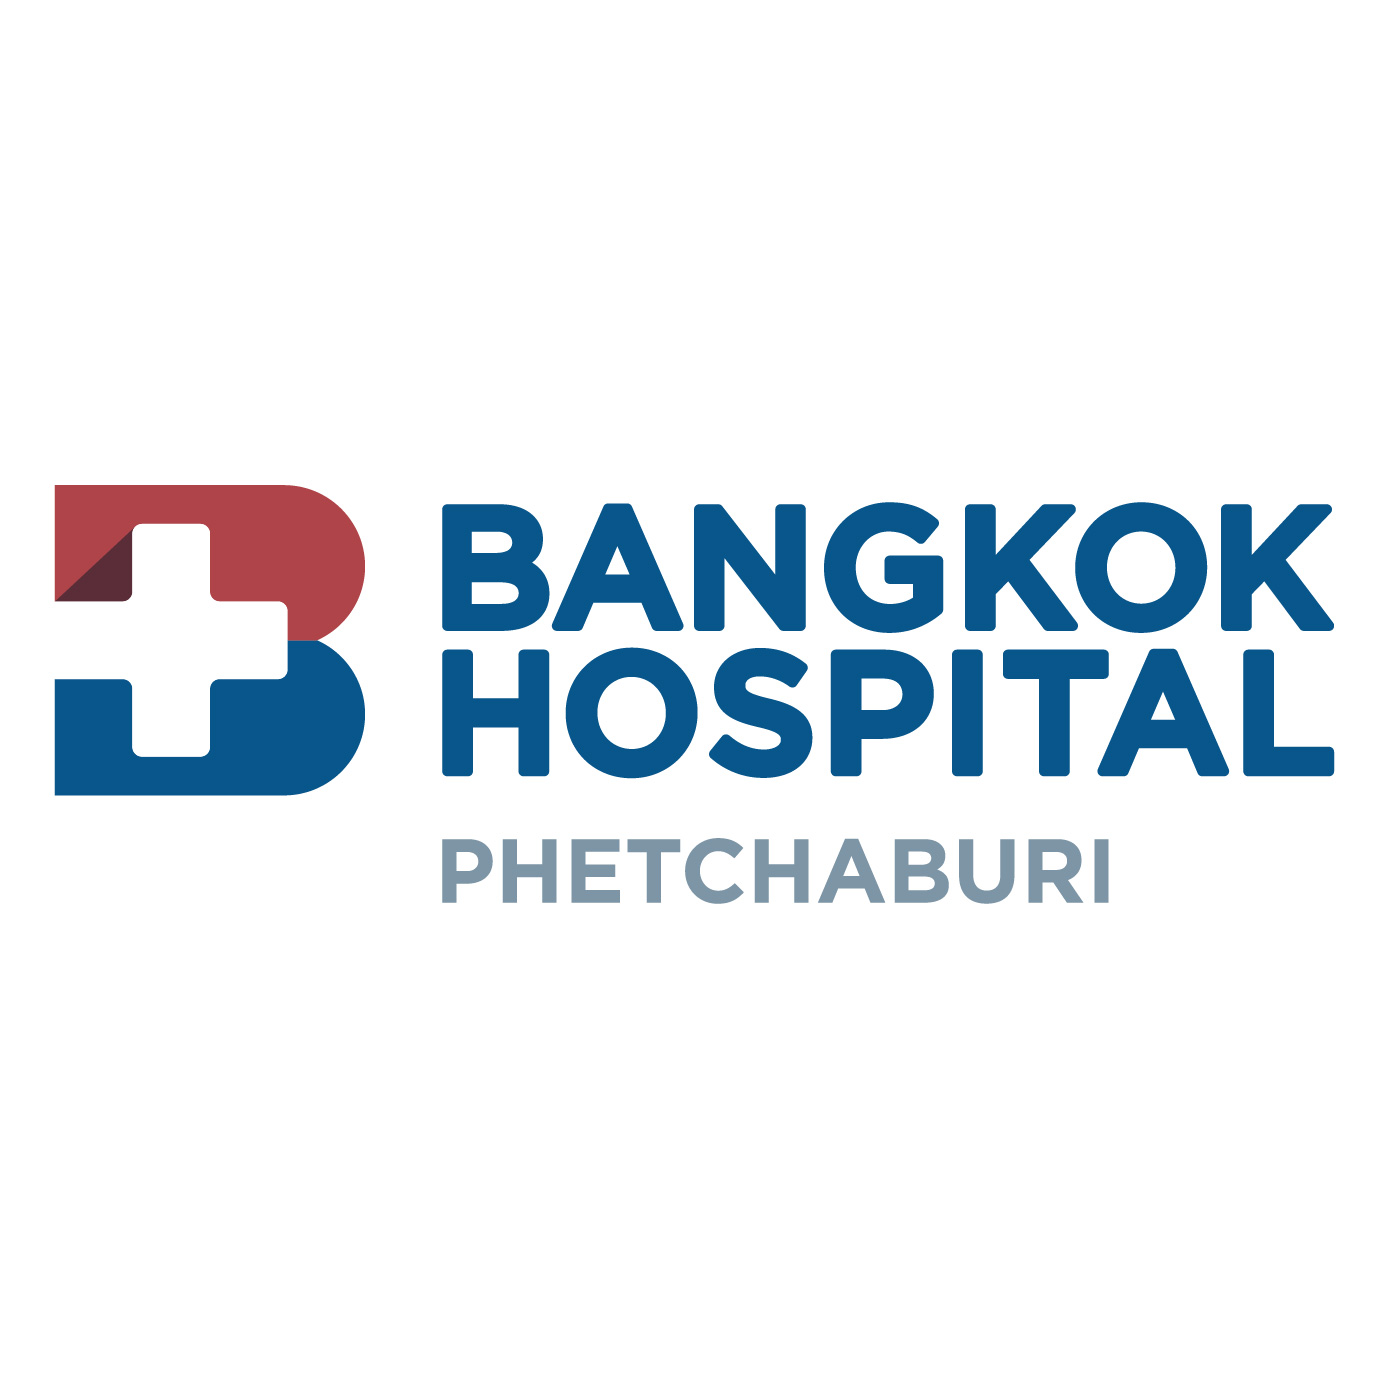 Bangkok Hospital Phetchaburi 01